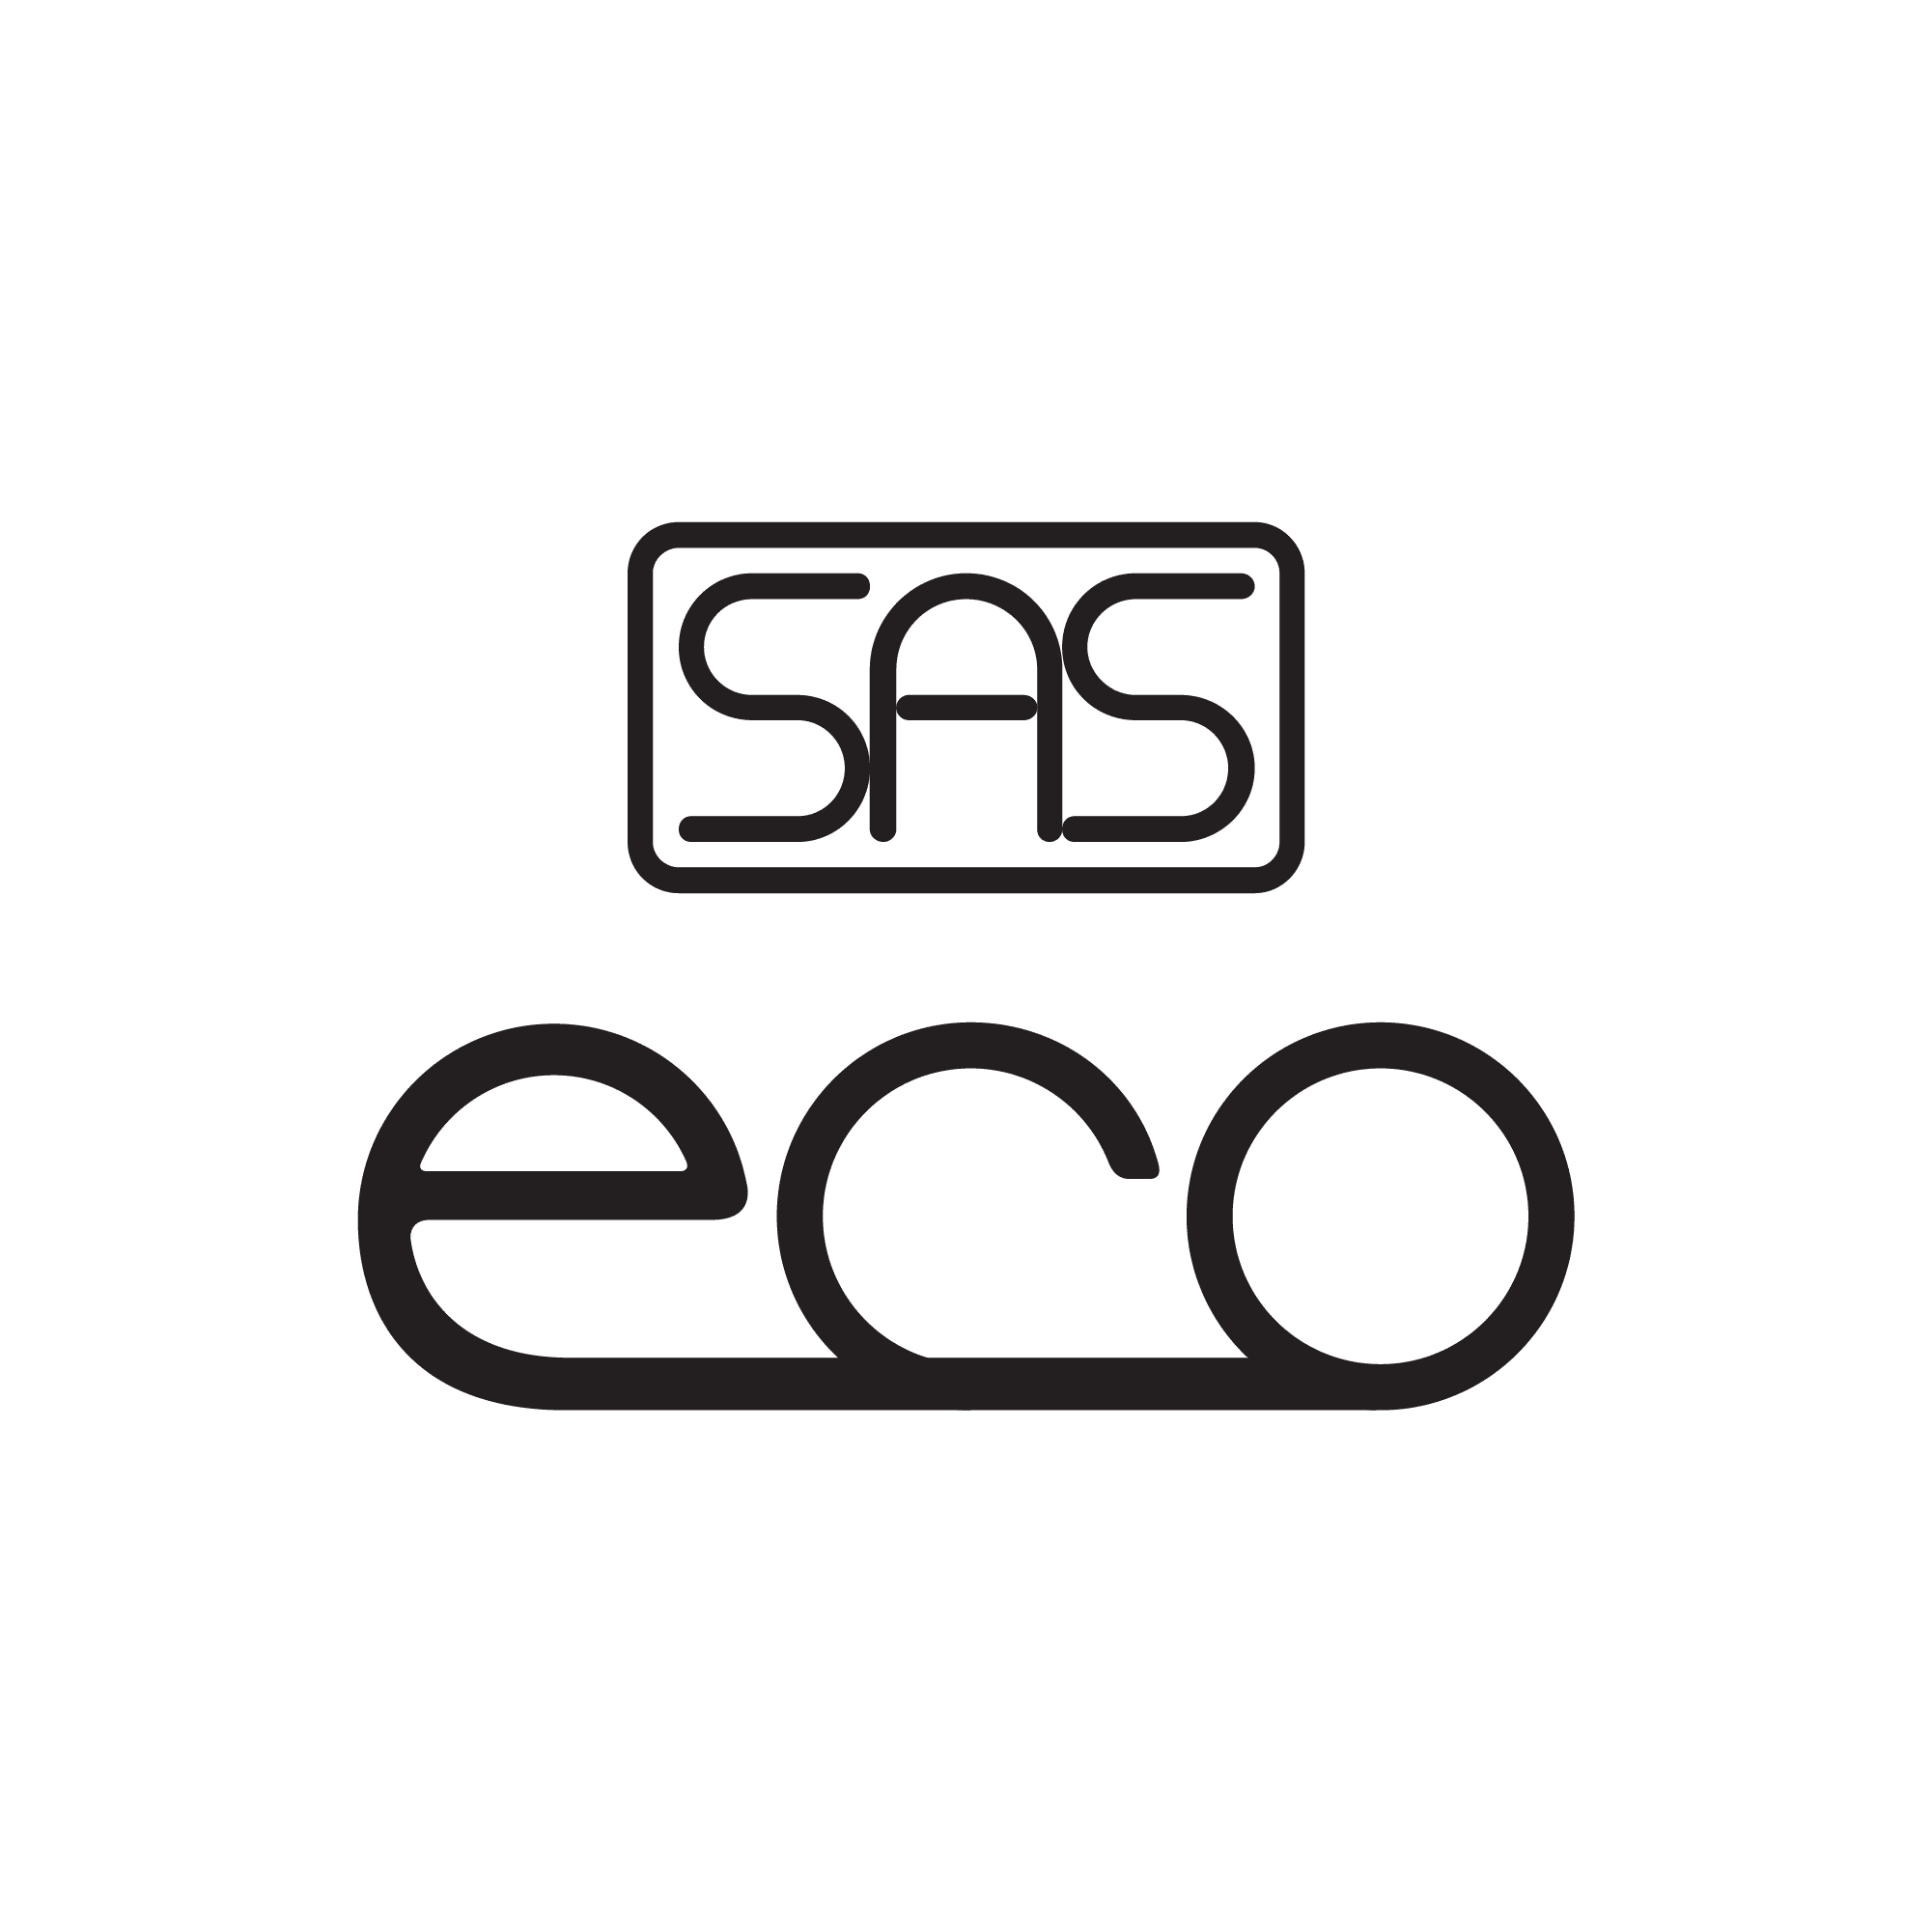 SAS Eco